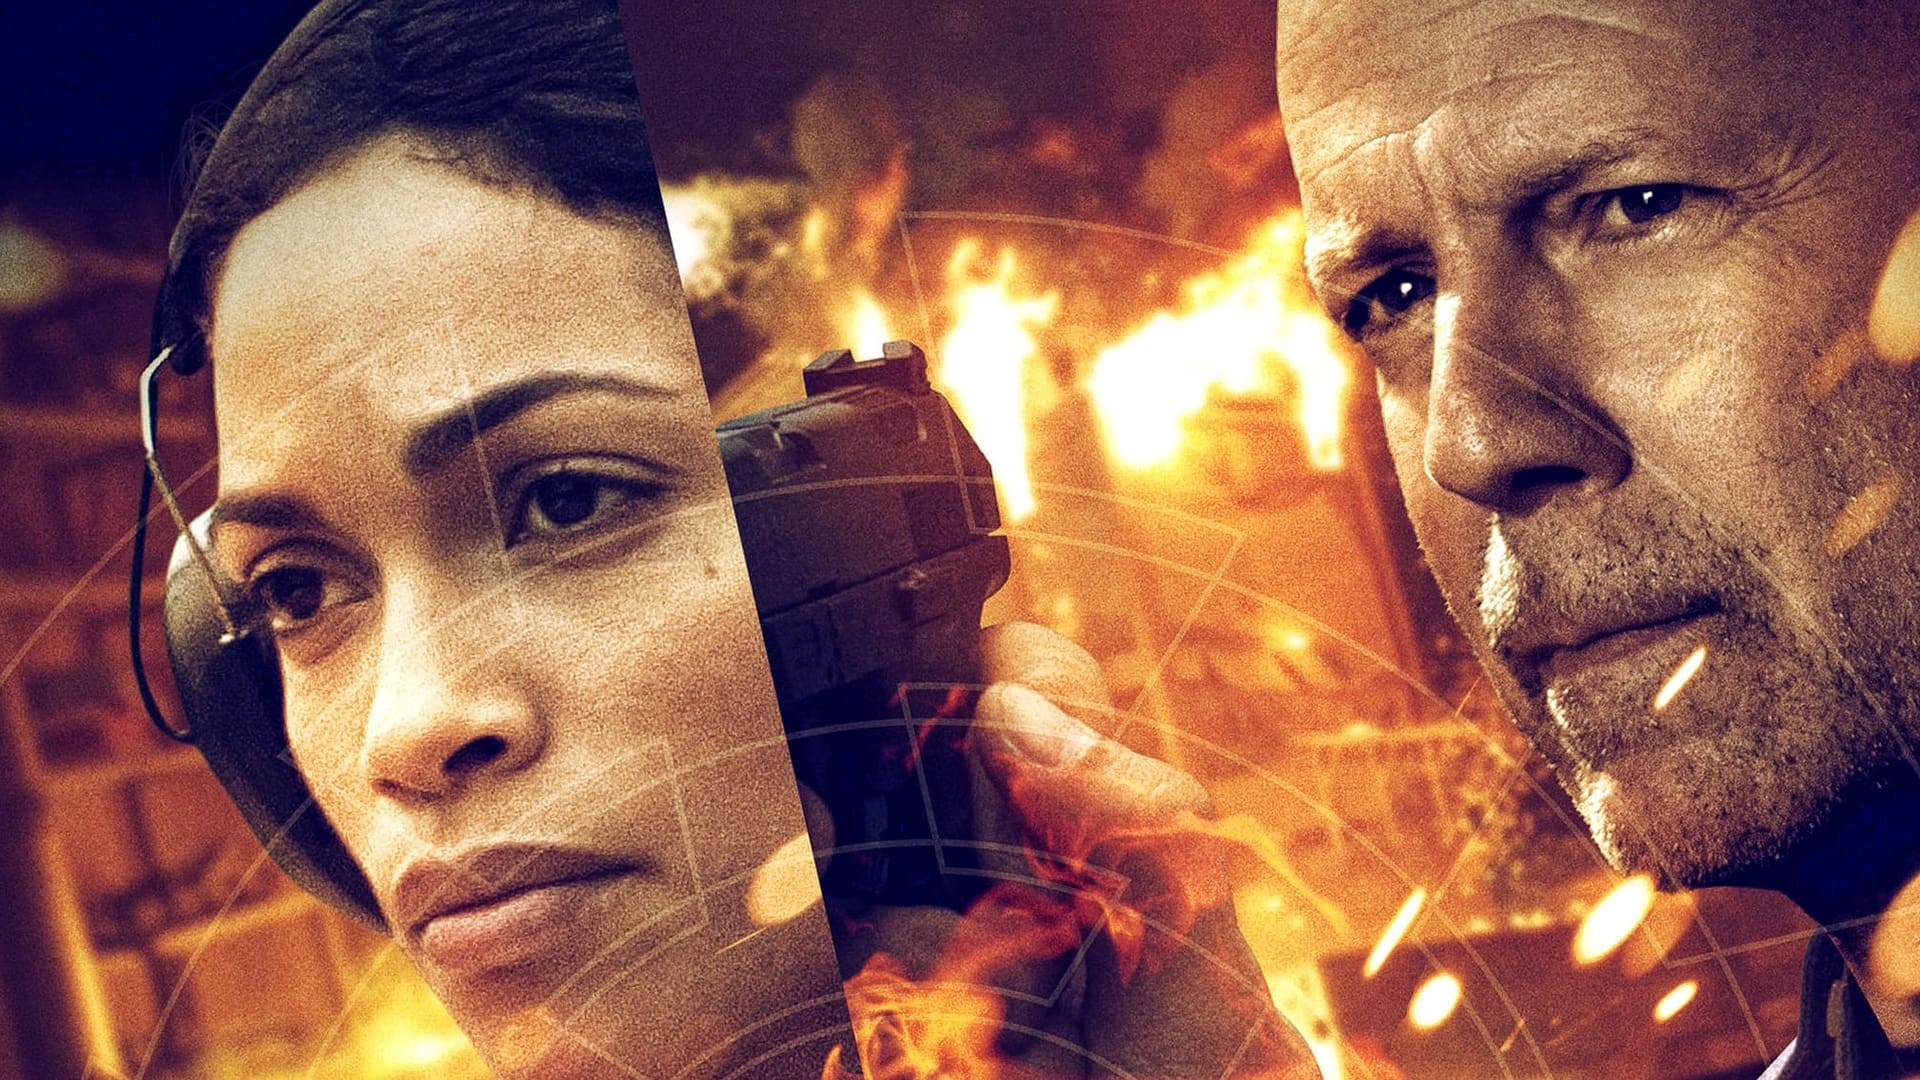 Fire with Fire : Vengeance par le feu (2012)